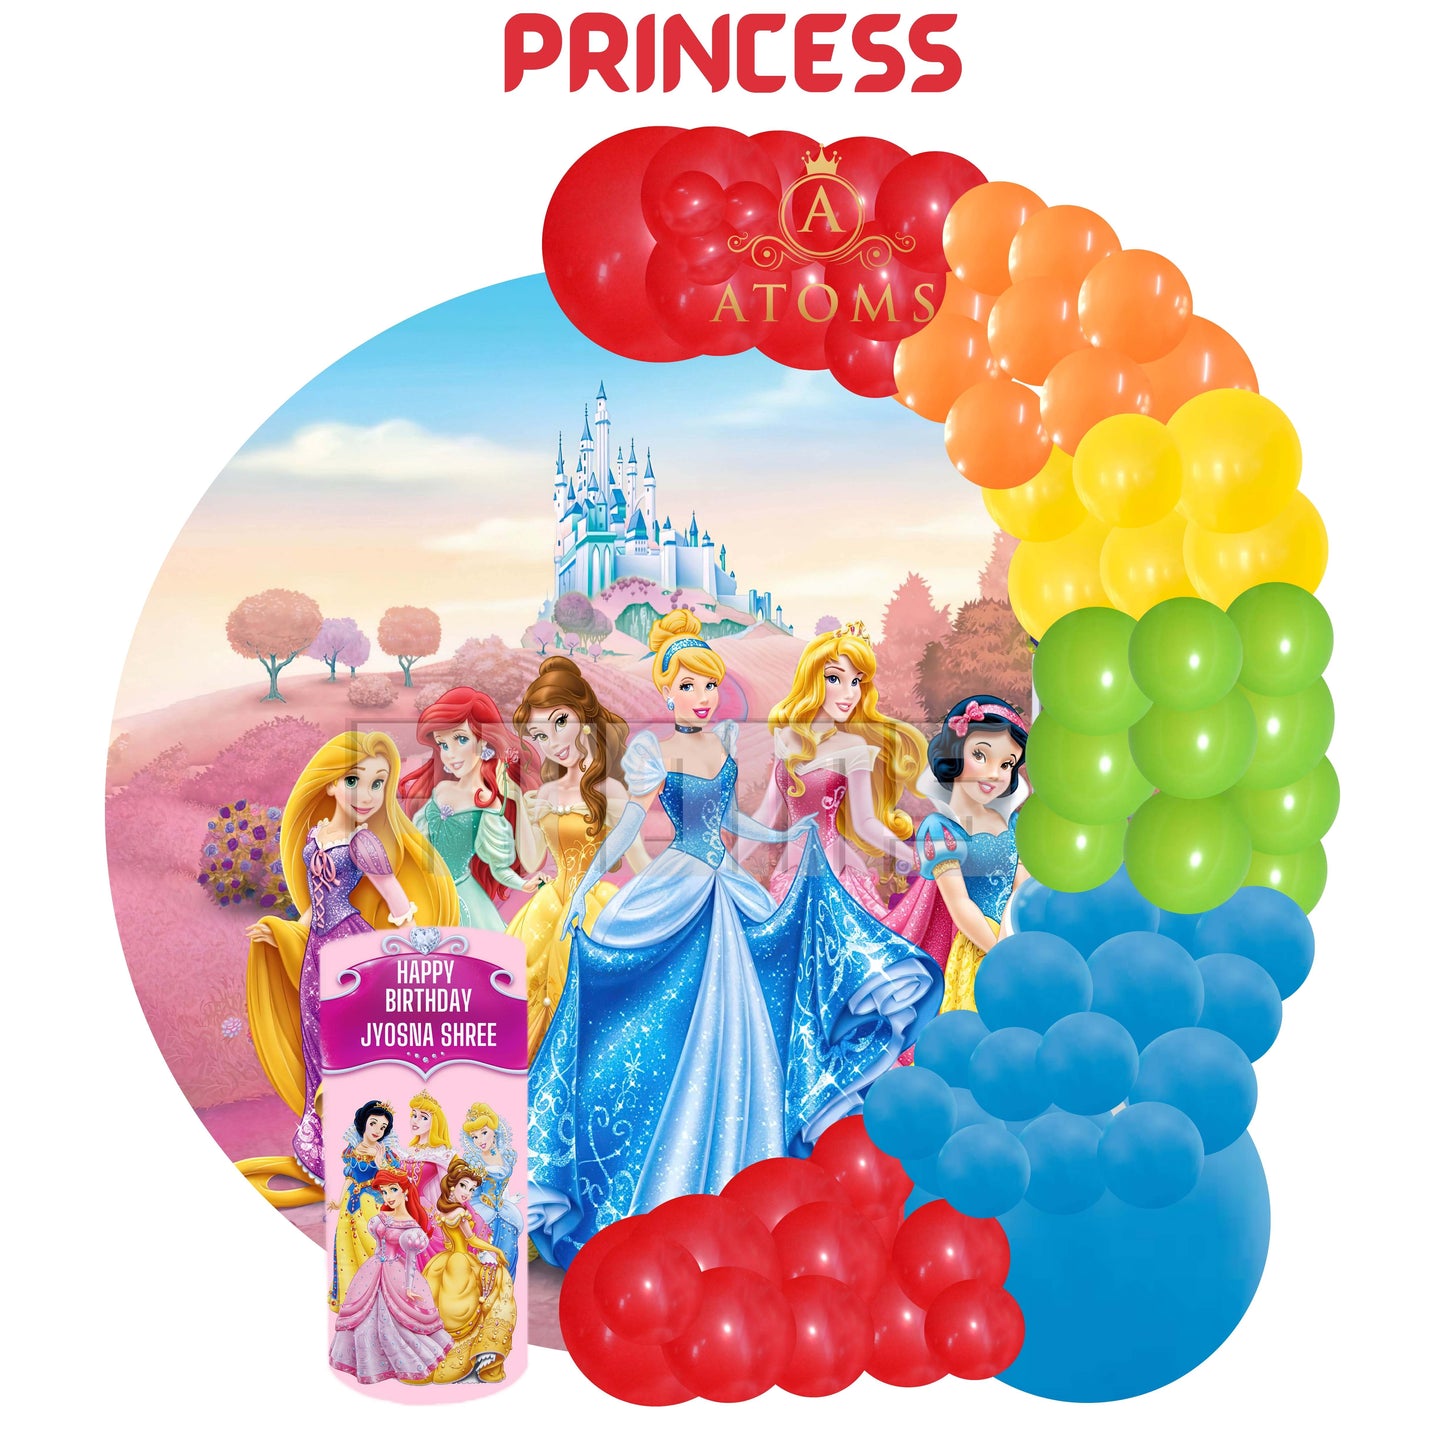 Princess Theme Setup